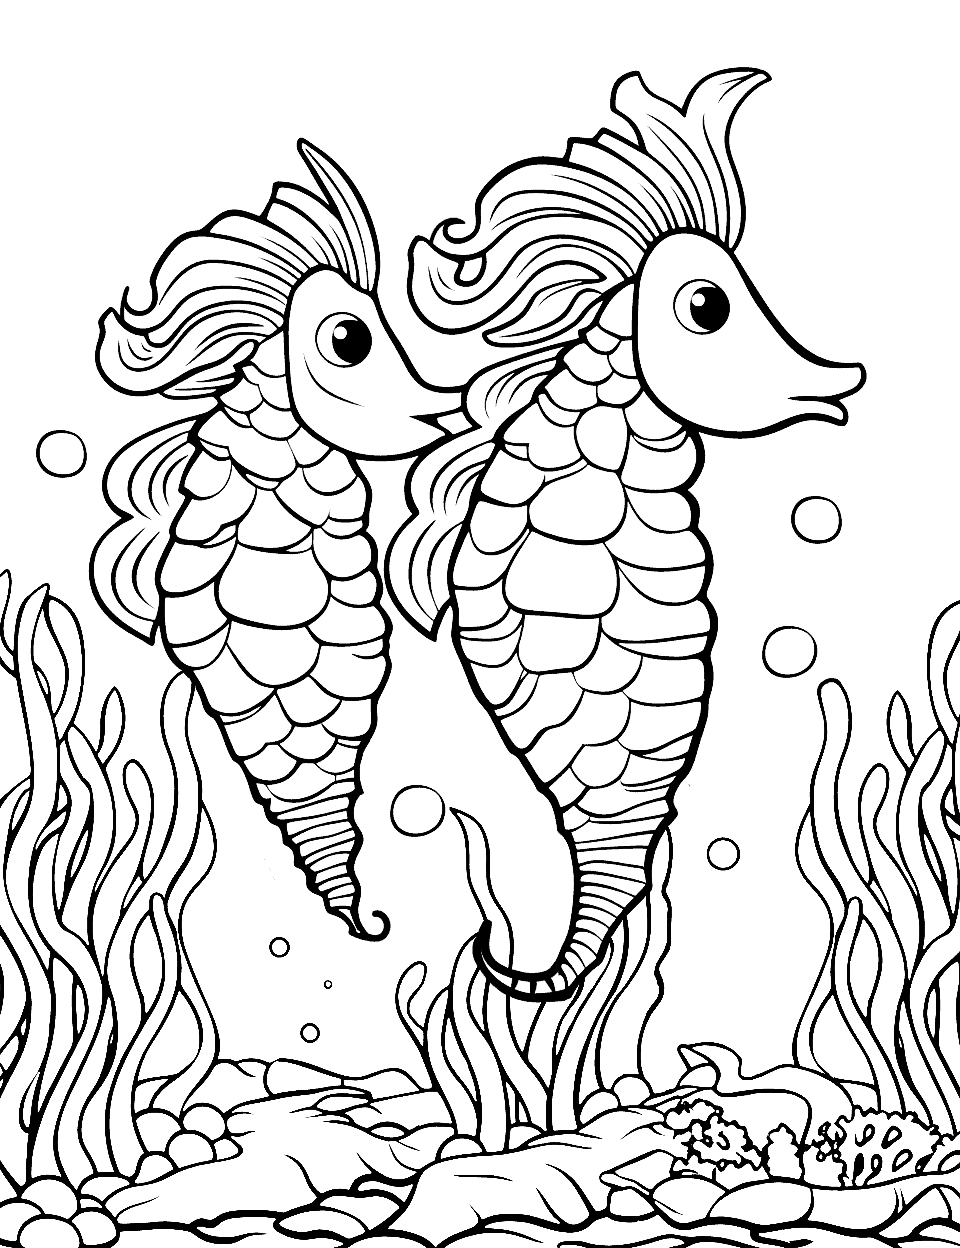 Seahorses Fish Coloring Page - Seahorses racing and just having fun.